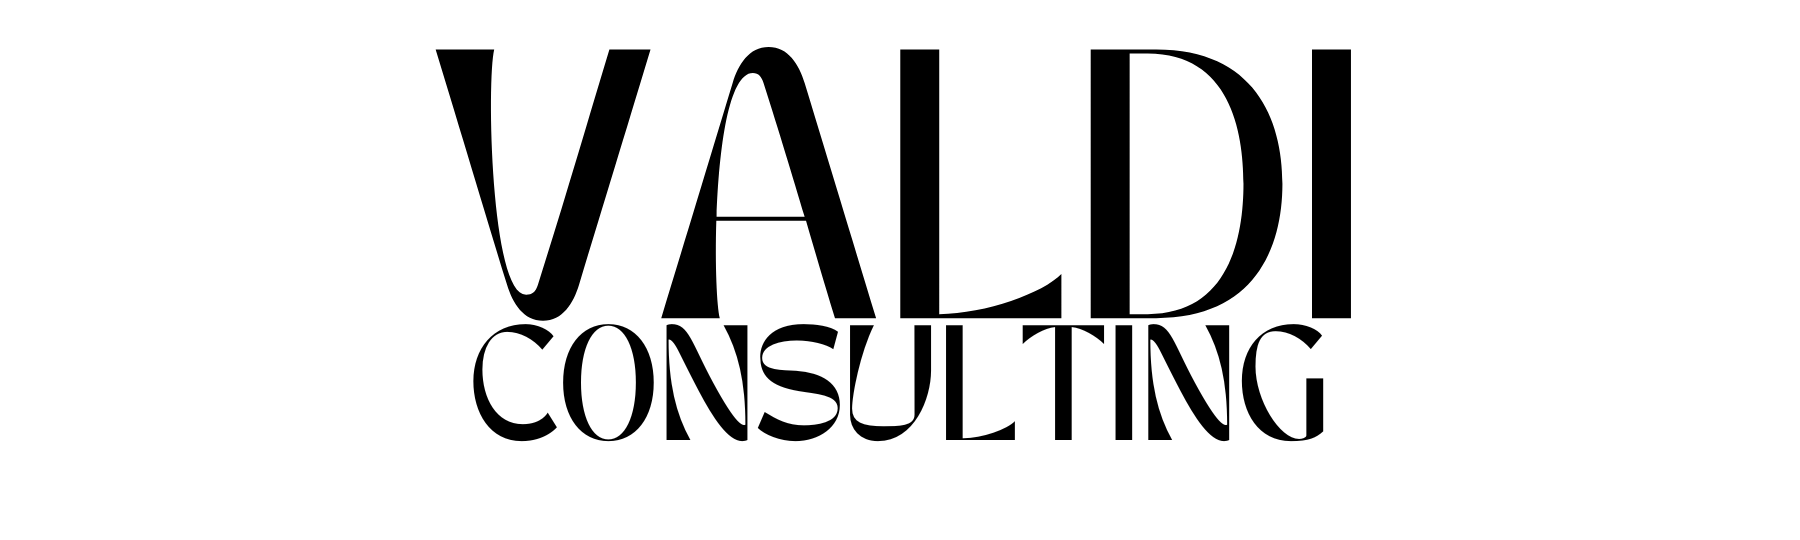 Valdi consulting